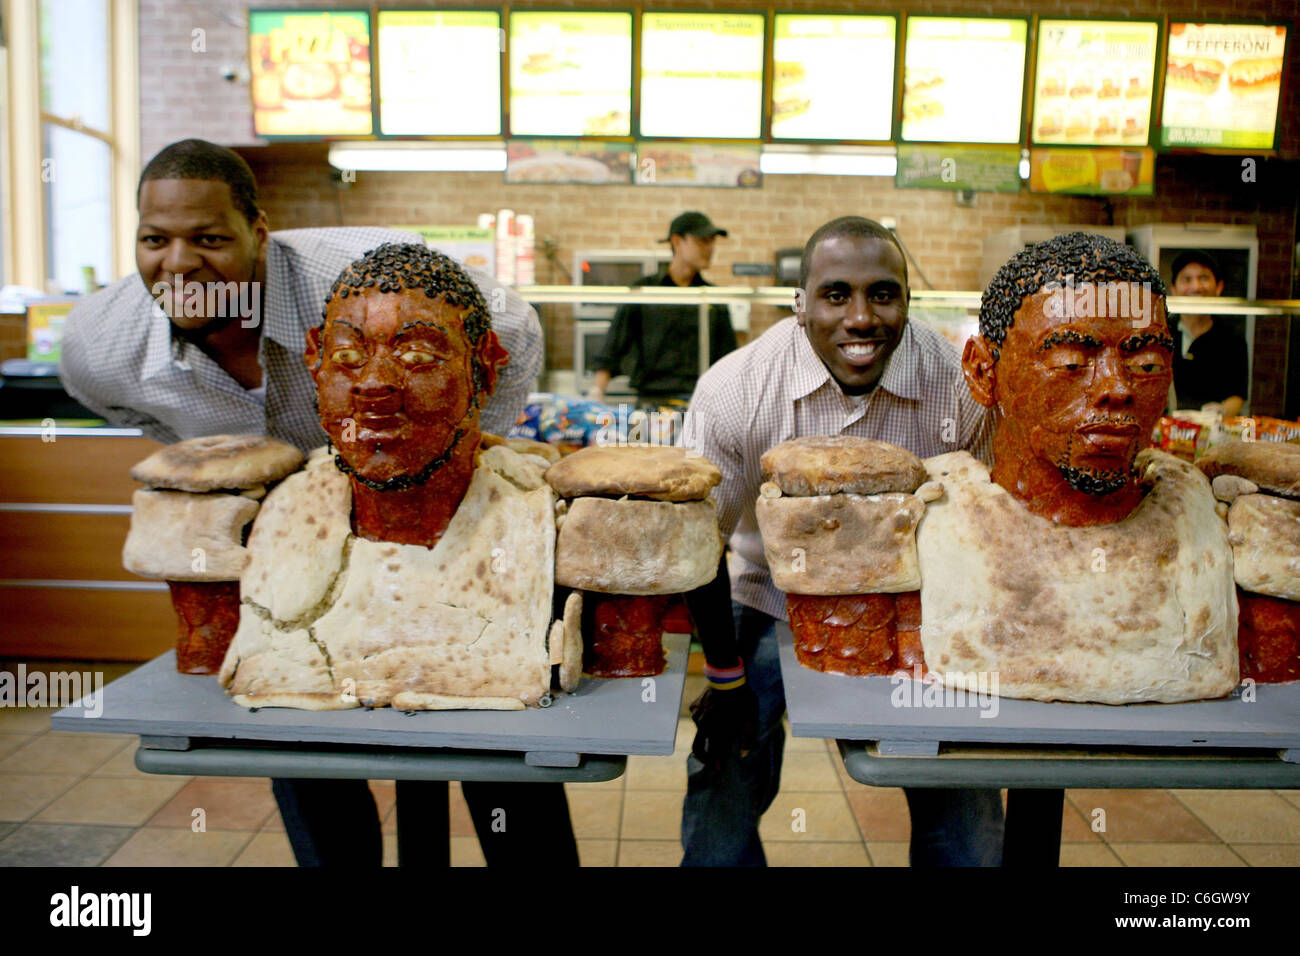 Top NFL Entwurf Perspektiven Ndamukong Suh und C. J. Spiller enthüllen ihre lebensgroße Büsten aus Peperoni bei Subway Sandwich gemacht Stockfoto